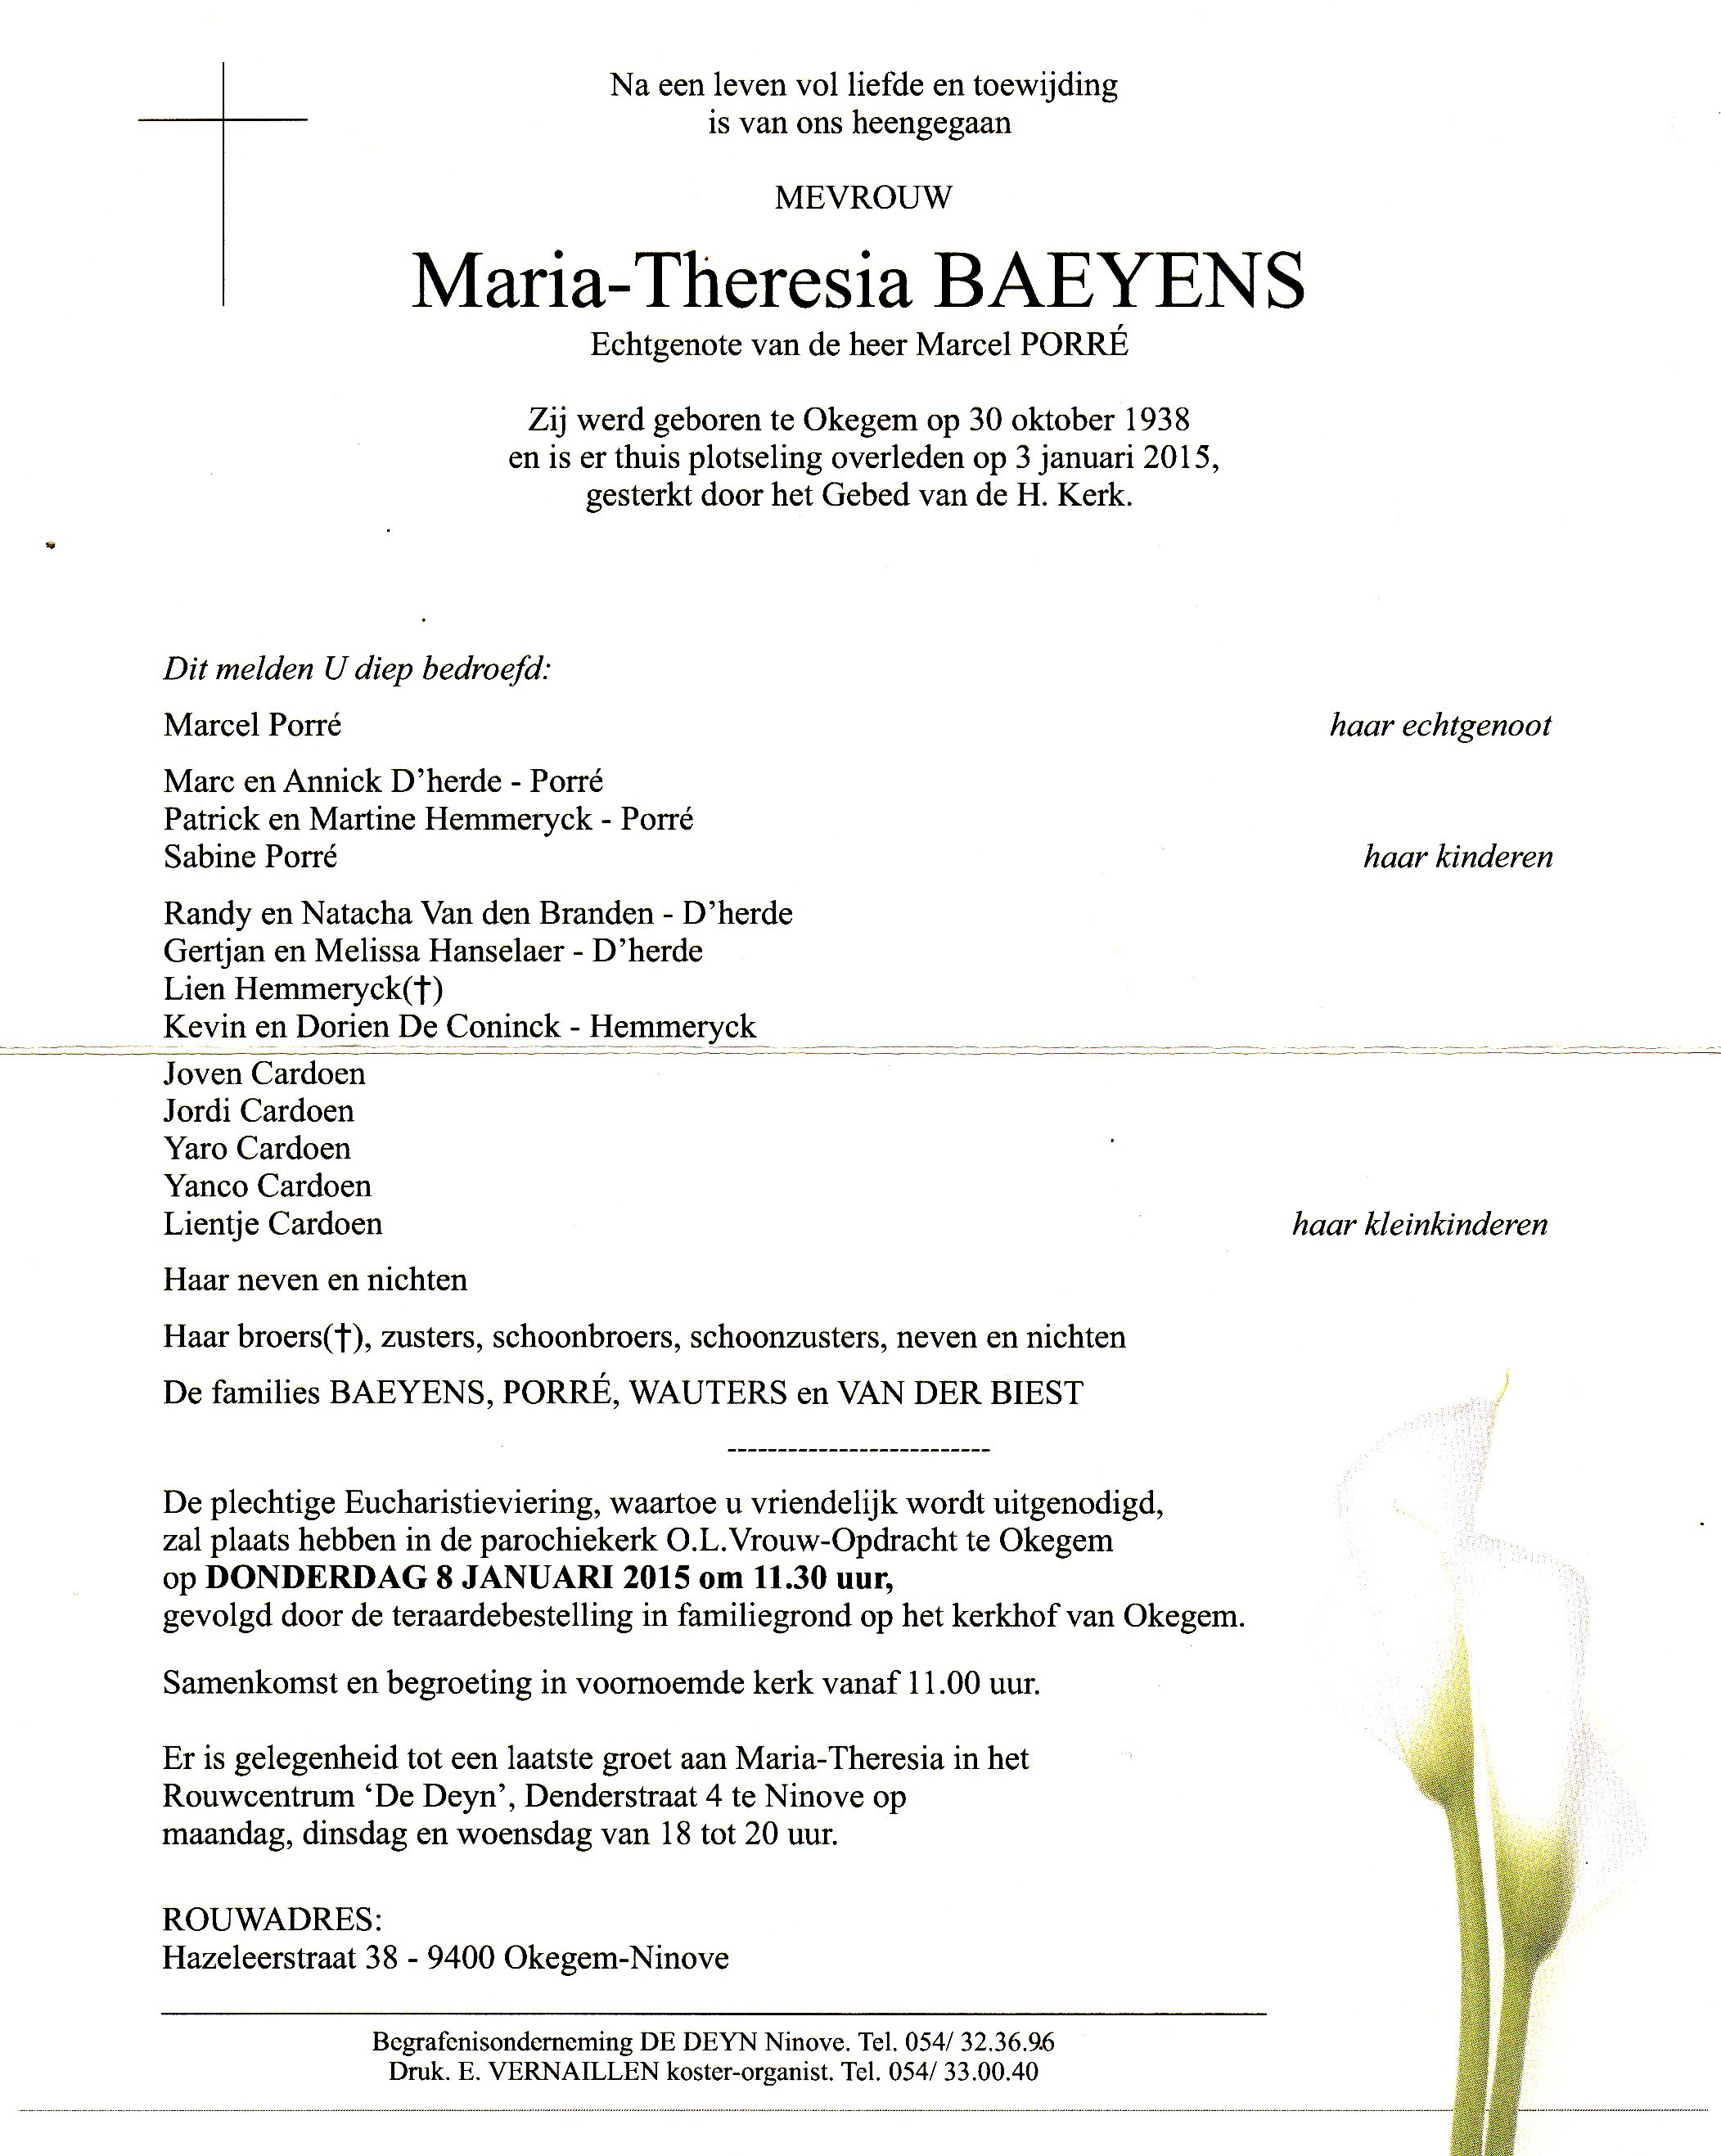 Baeyens Maria-Theresia  